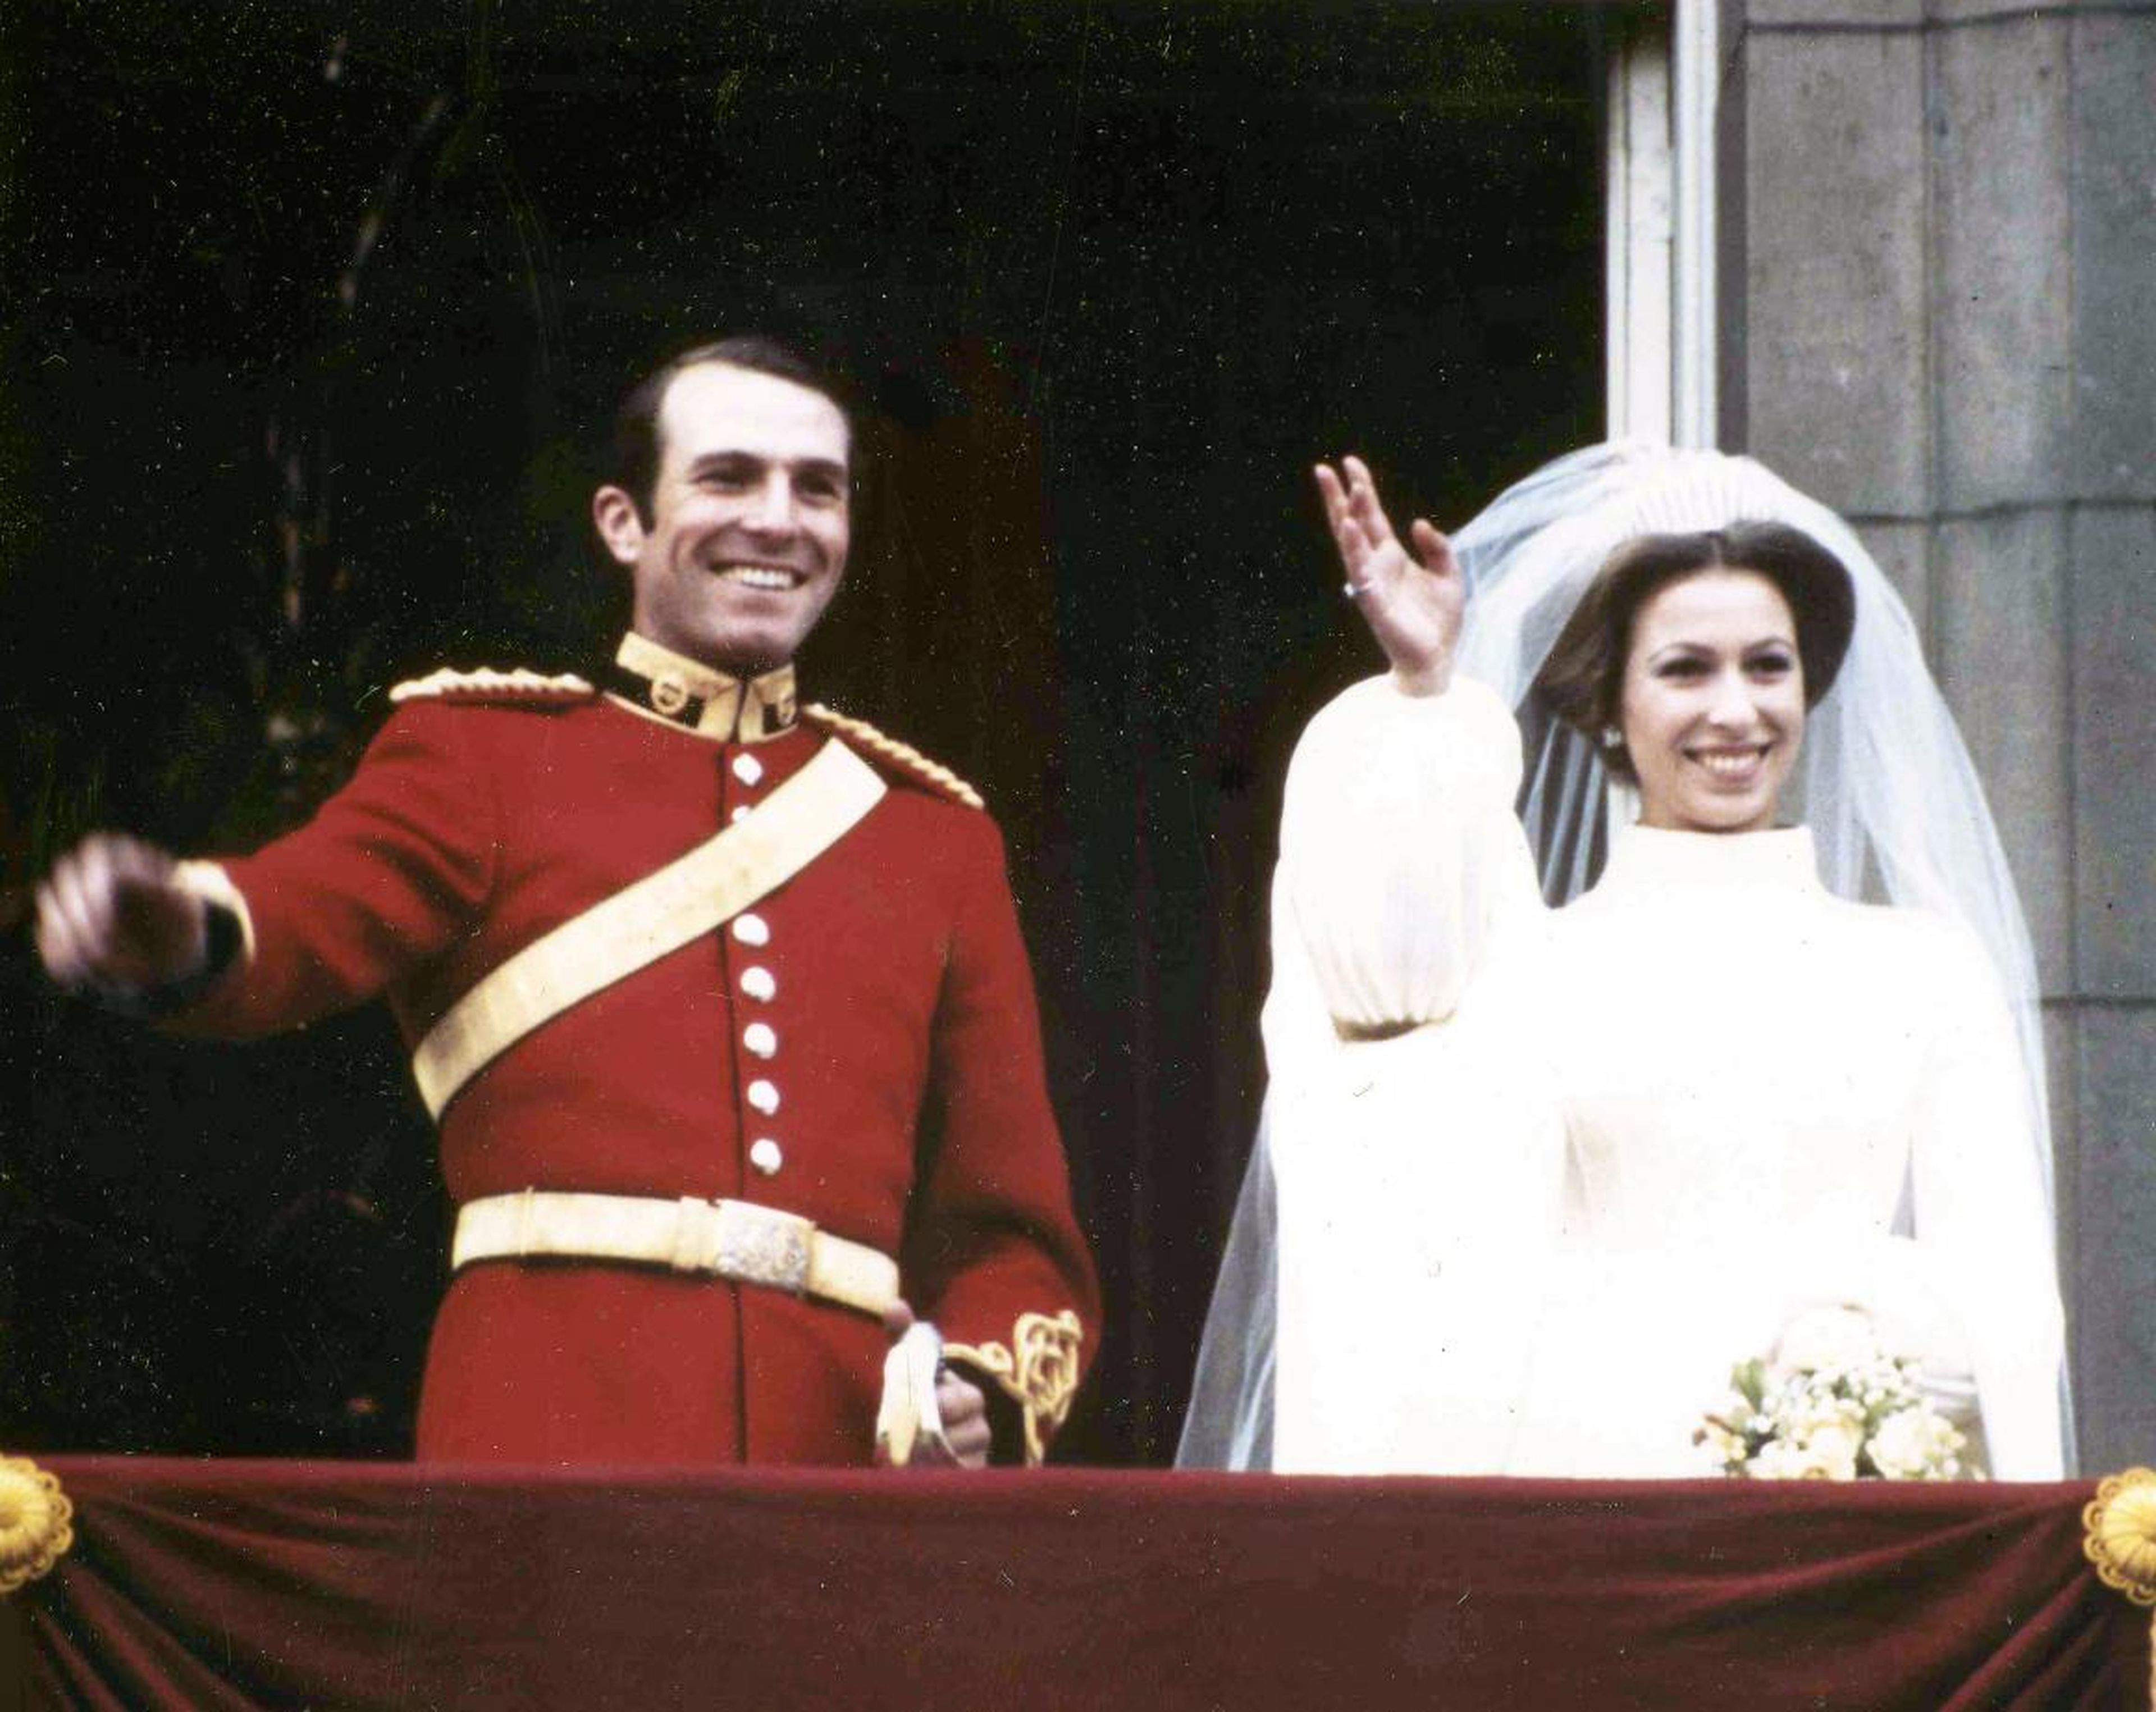 La hija de la Reina, la princesa Ana, se casó con el Capitán Mark Phillips en 1973. Phillips no usó un título real, y la pareja tampoco usó títulos para sus hijos.